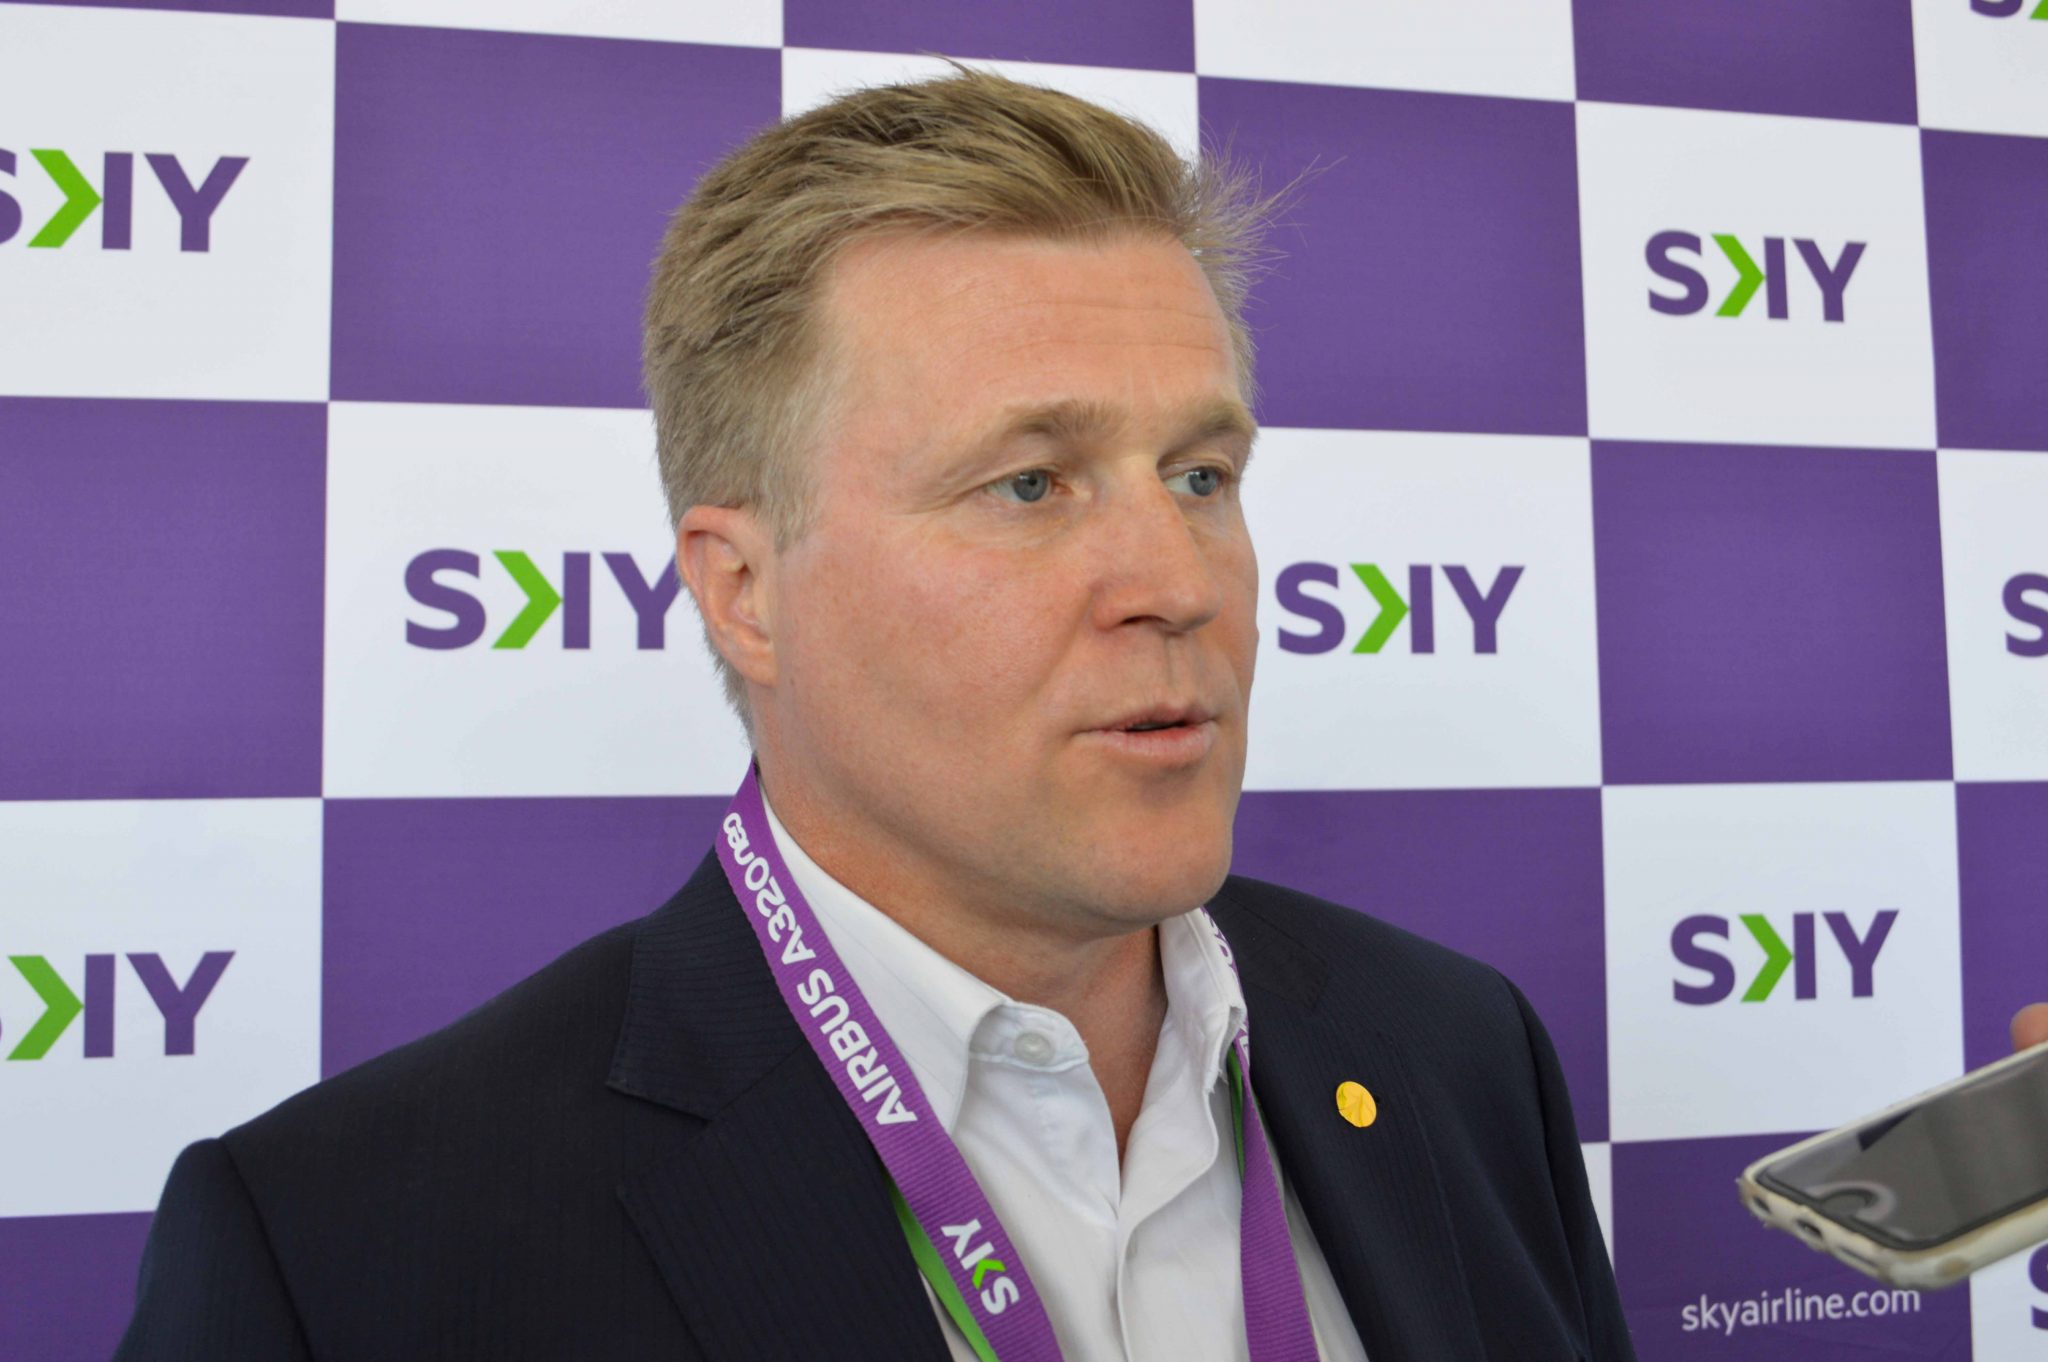 Presidente de Sky Airlines, Holger Paulmann, no descarta realizar fusión con Avianca